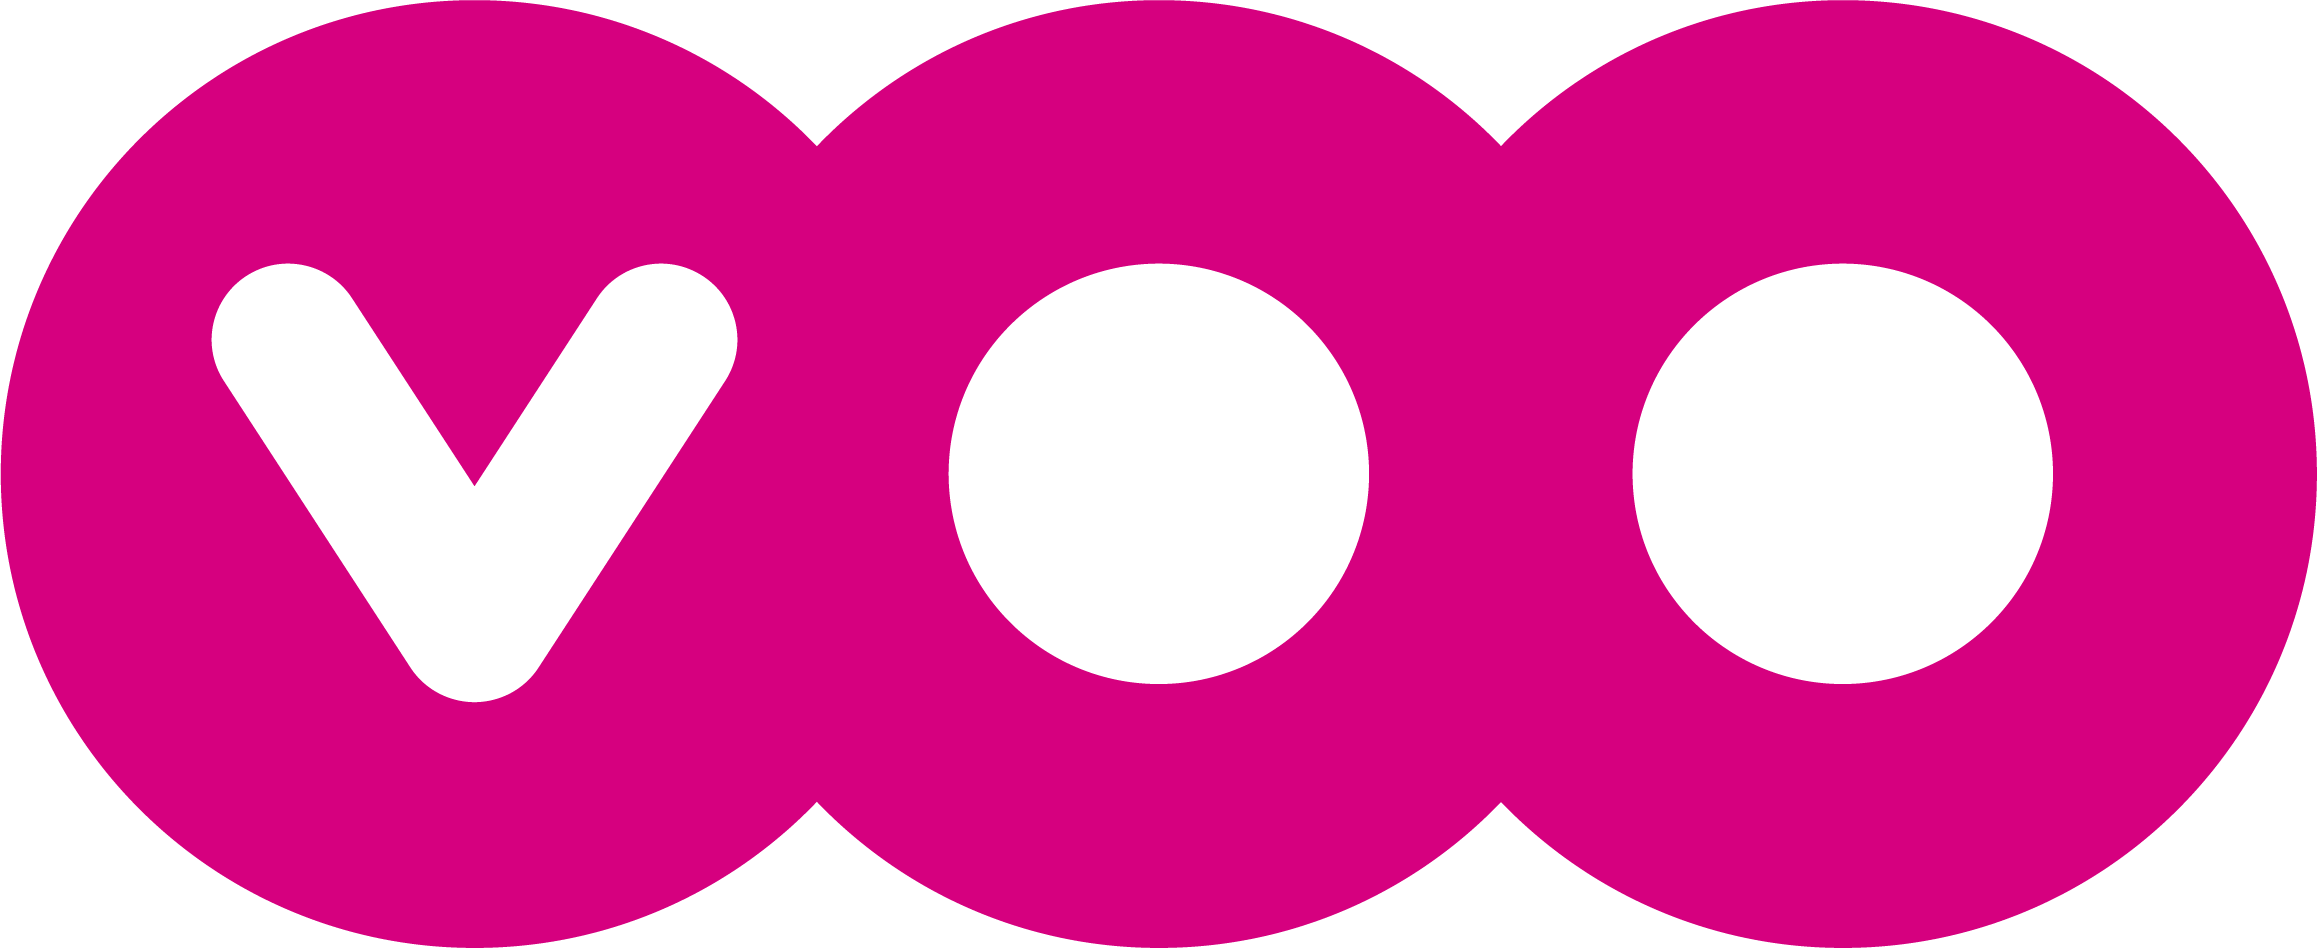 voo-logo